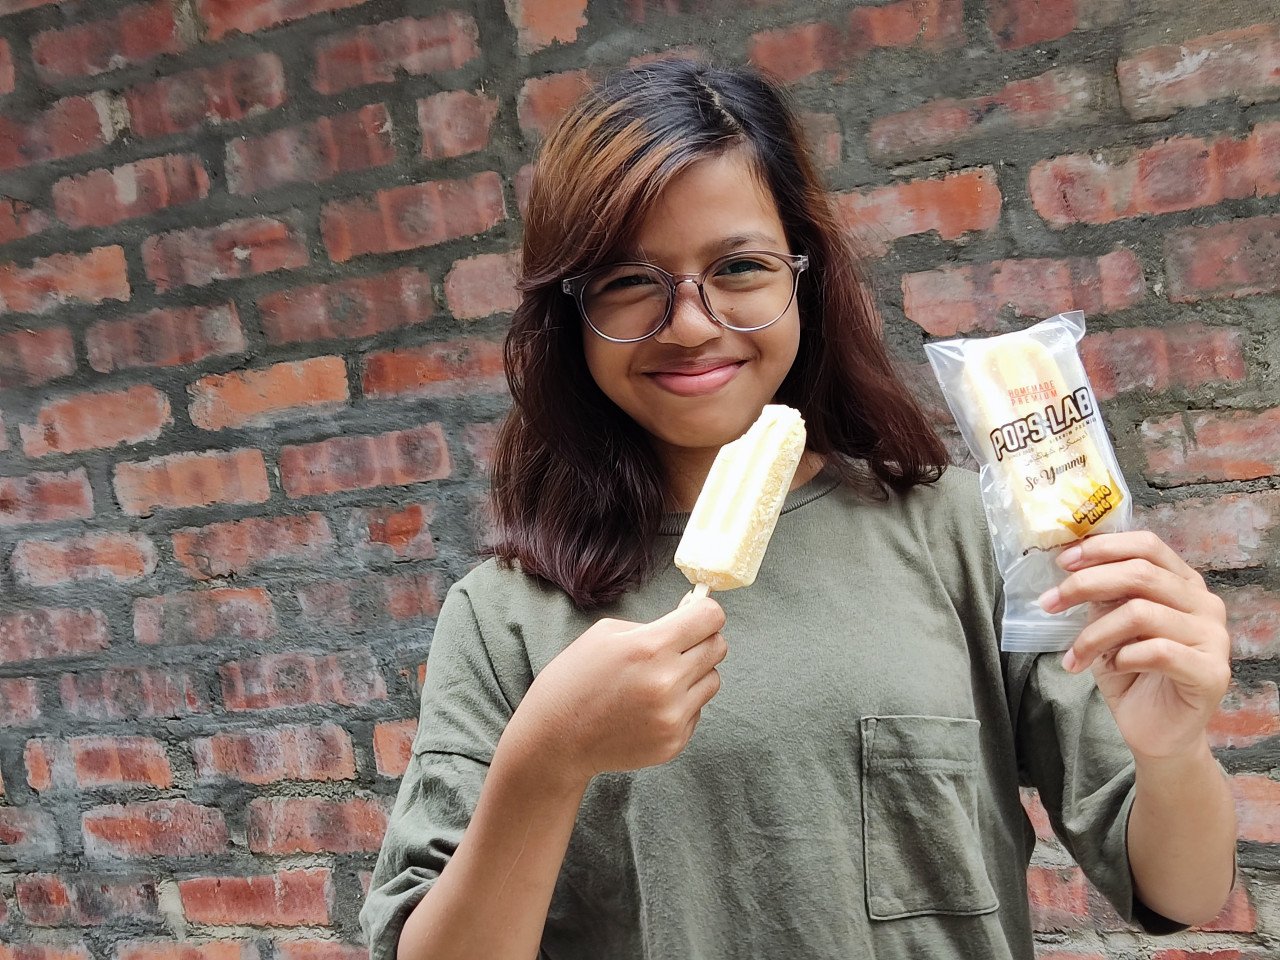 Durian berkualiti tinggi turut menjadi kandungan asli aiskrim yang diusahakan oleh pengusaha tempatan yang boleh diperoleh di pasaran dengan harga berpatutan - Gambar ihsan FB Aiskrim PopsLab Malaysia